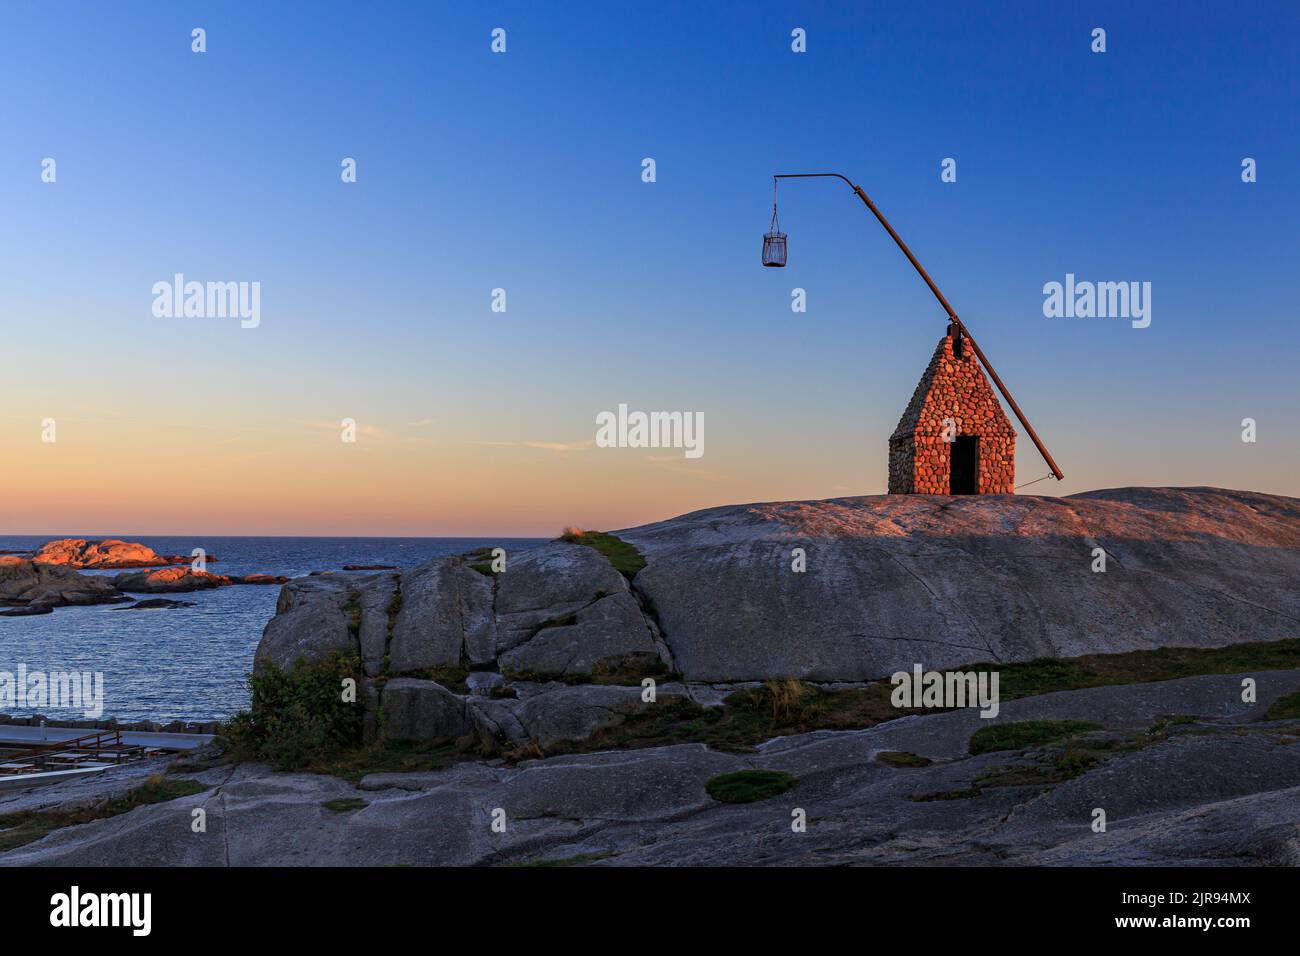 La fin du monde - Vippefyr ancien phare à Verdens Ende en Norvège Banque D'Images